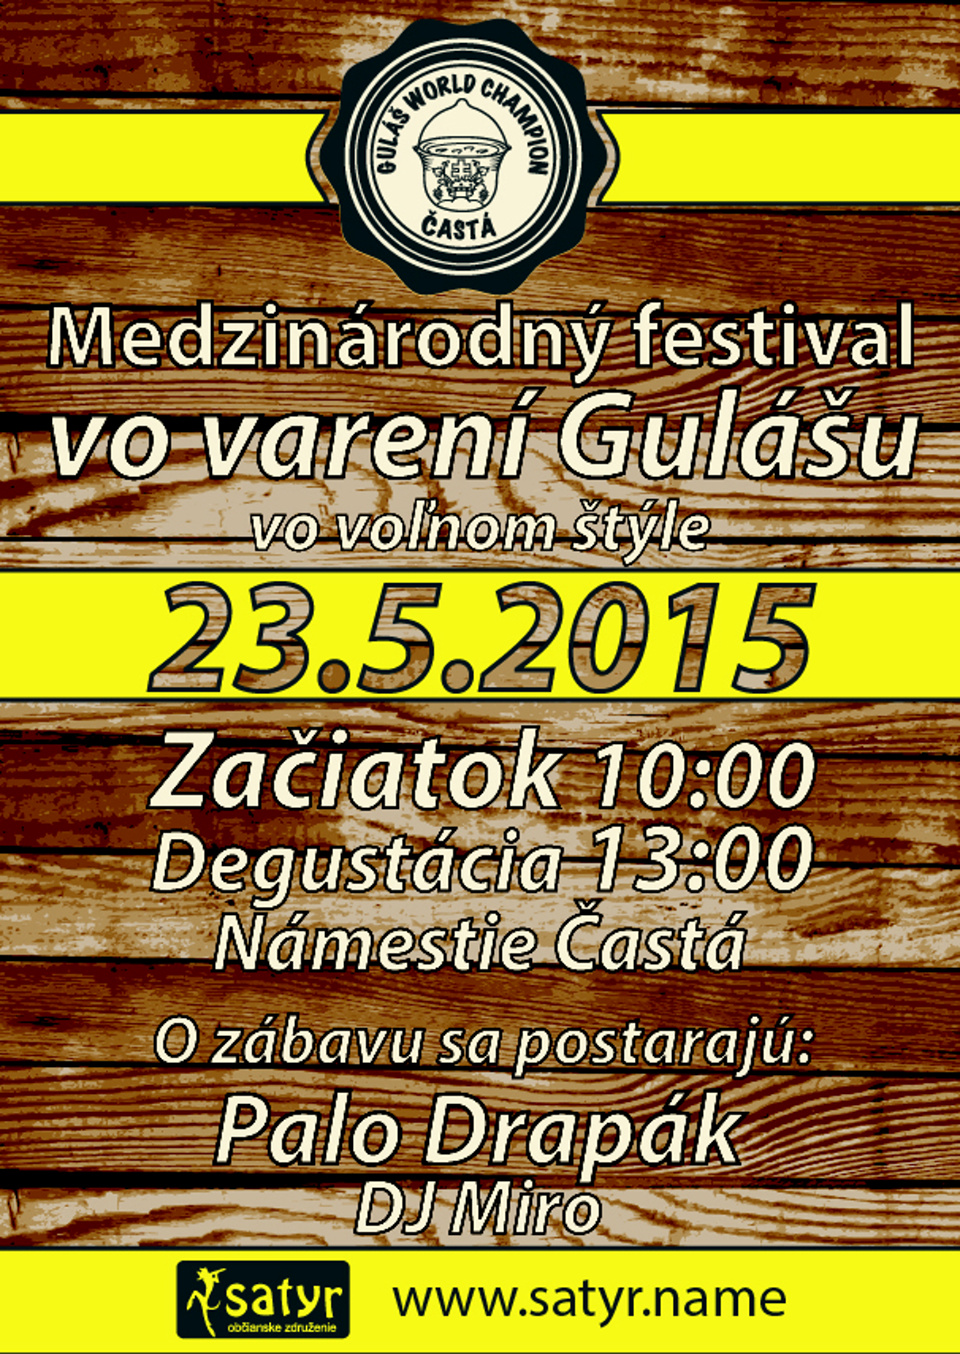 Častá Guláš World Champion – medzinárodná súťaž vo varení gulášu vo voľnom štýle 2015 - V. ročník